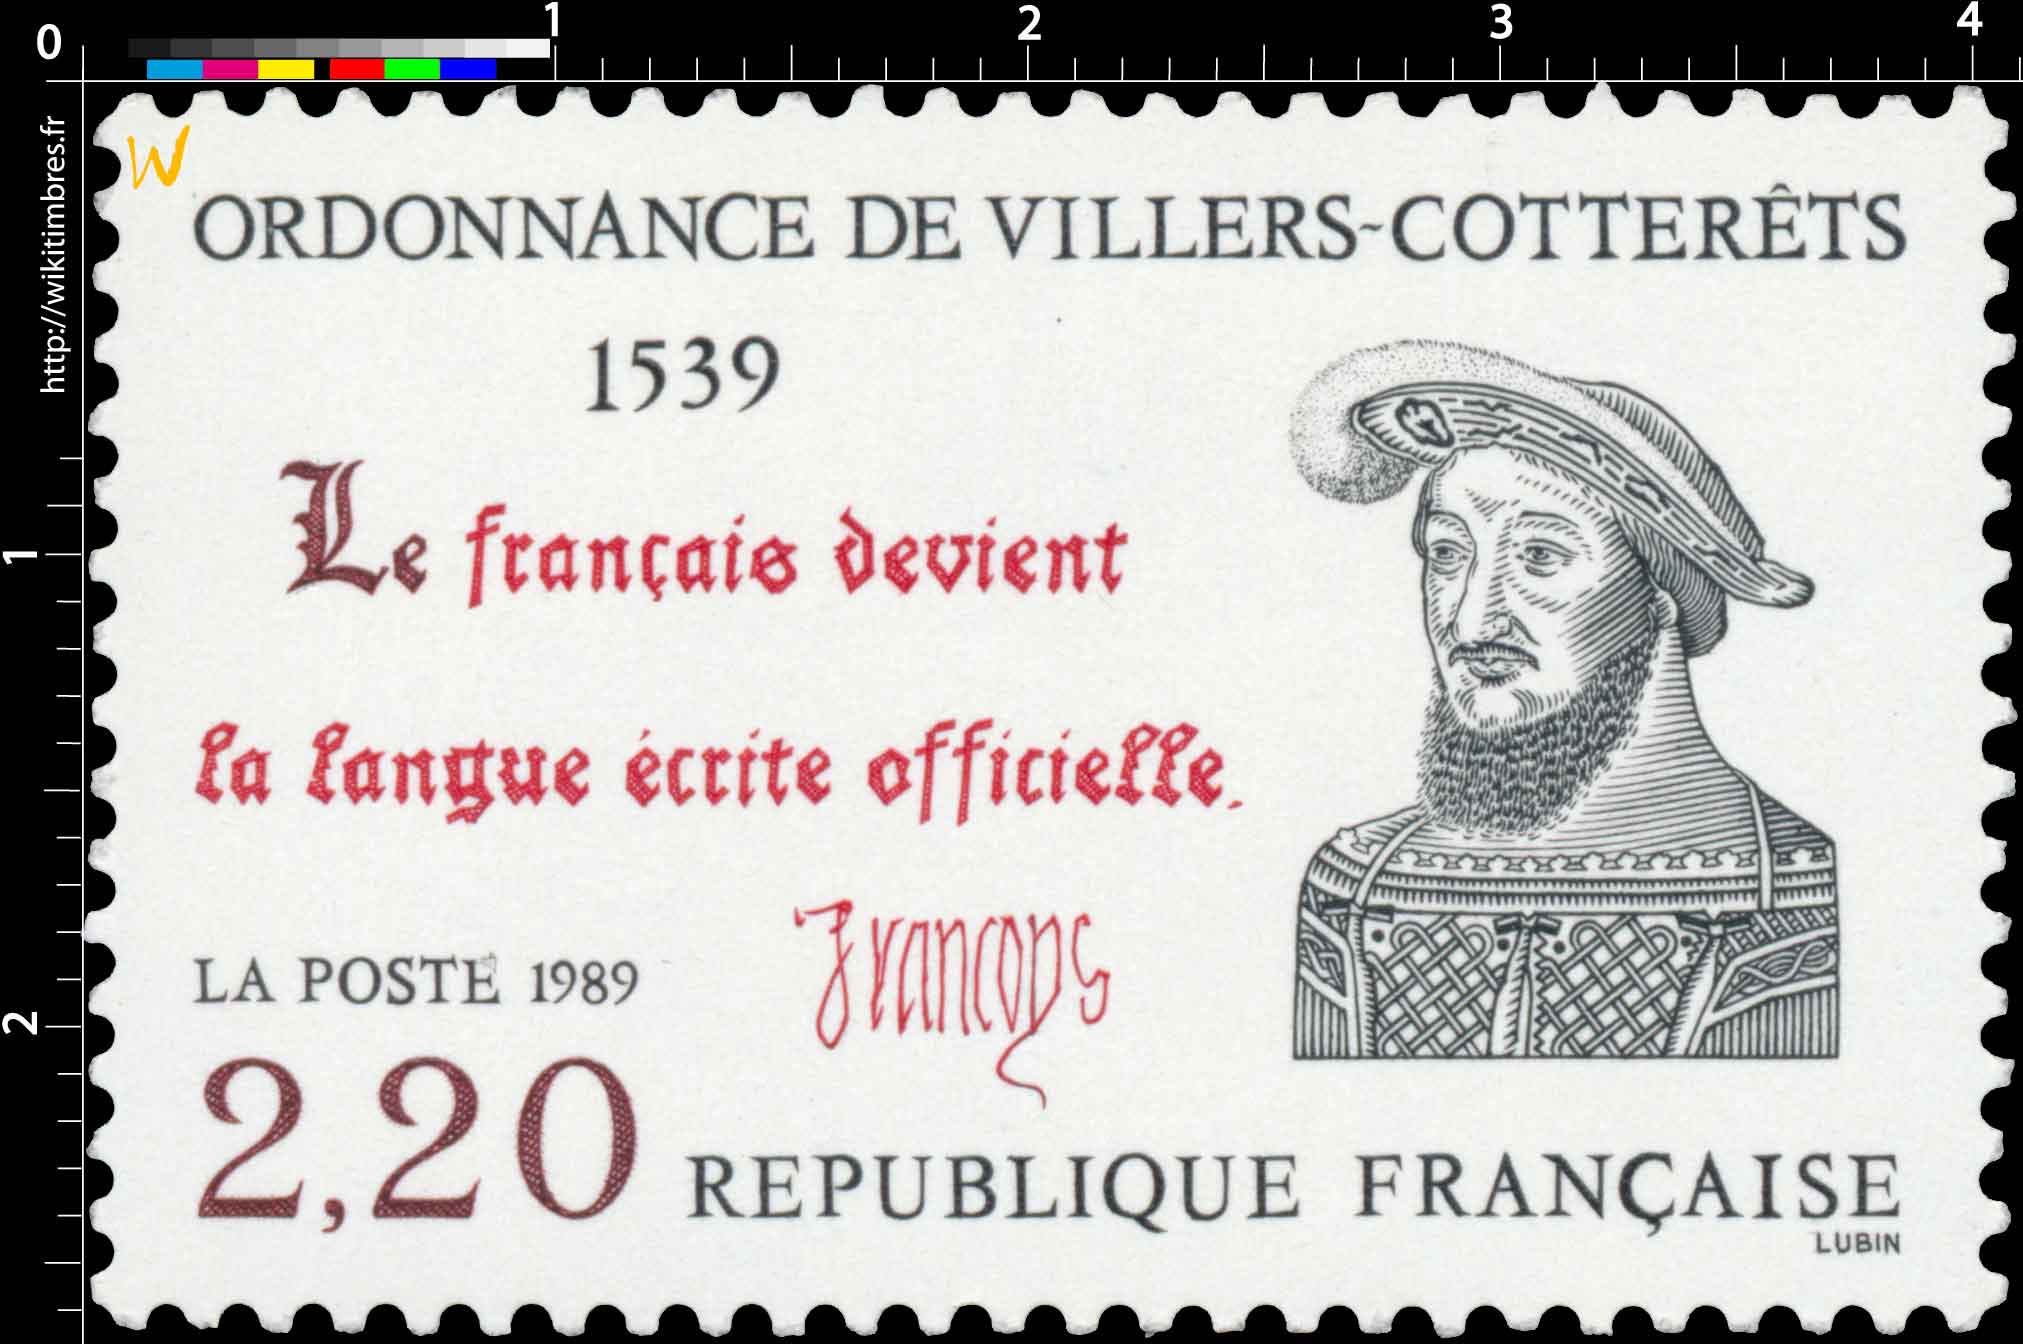 1989 ORDONNANCE DE VILLERS-COTTERÊTS 1539 Le français devient la langue officielle.